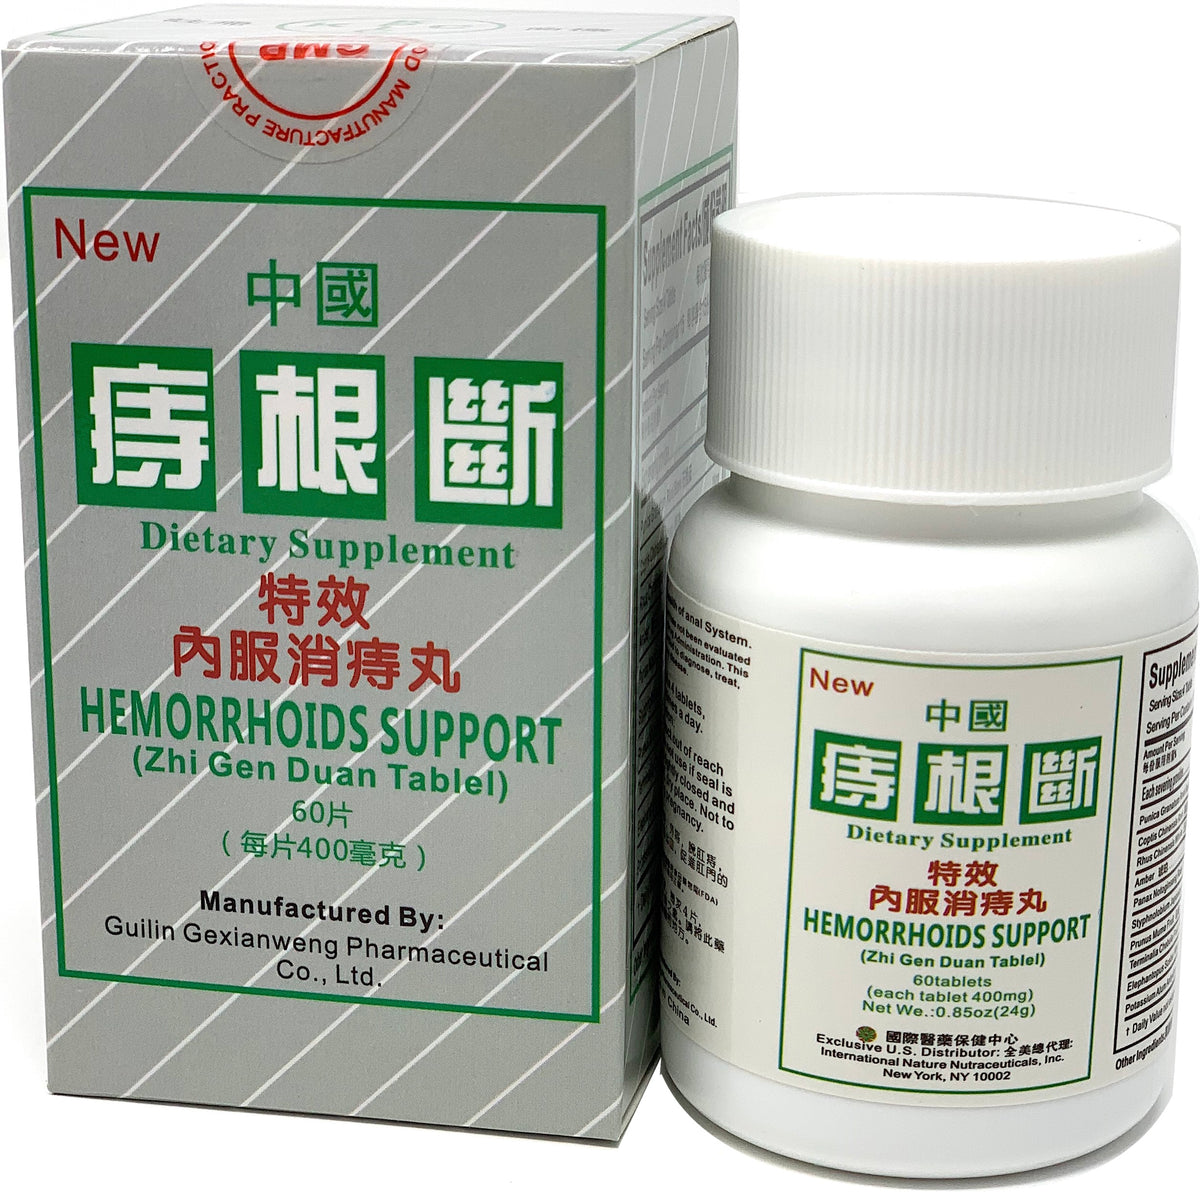 Hemorrhoids Support (Zhi Gen Duan Tablet) 痔根断